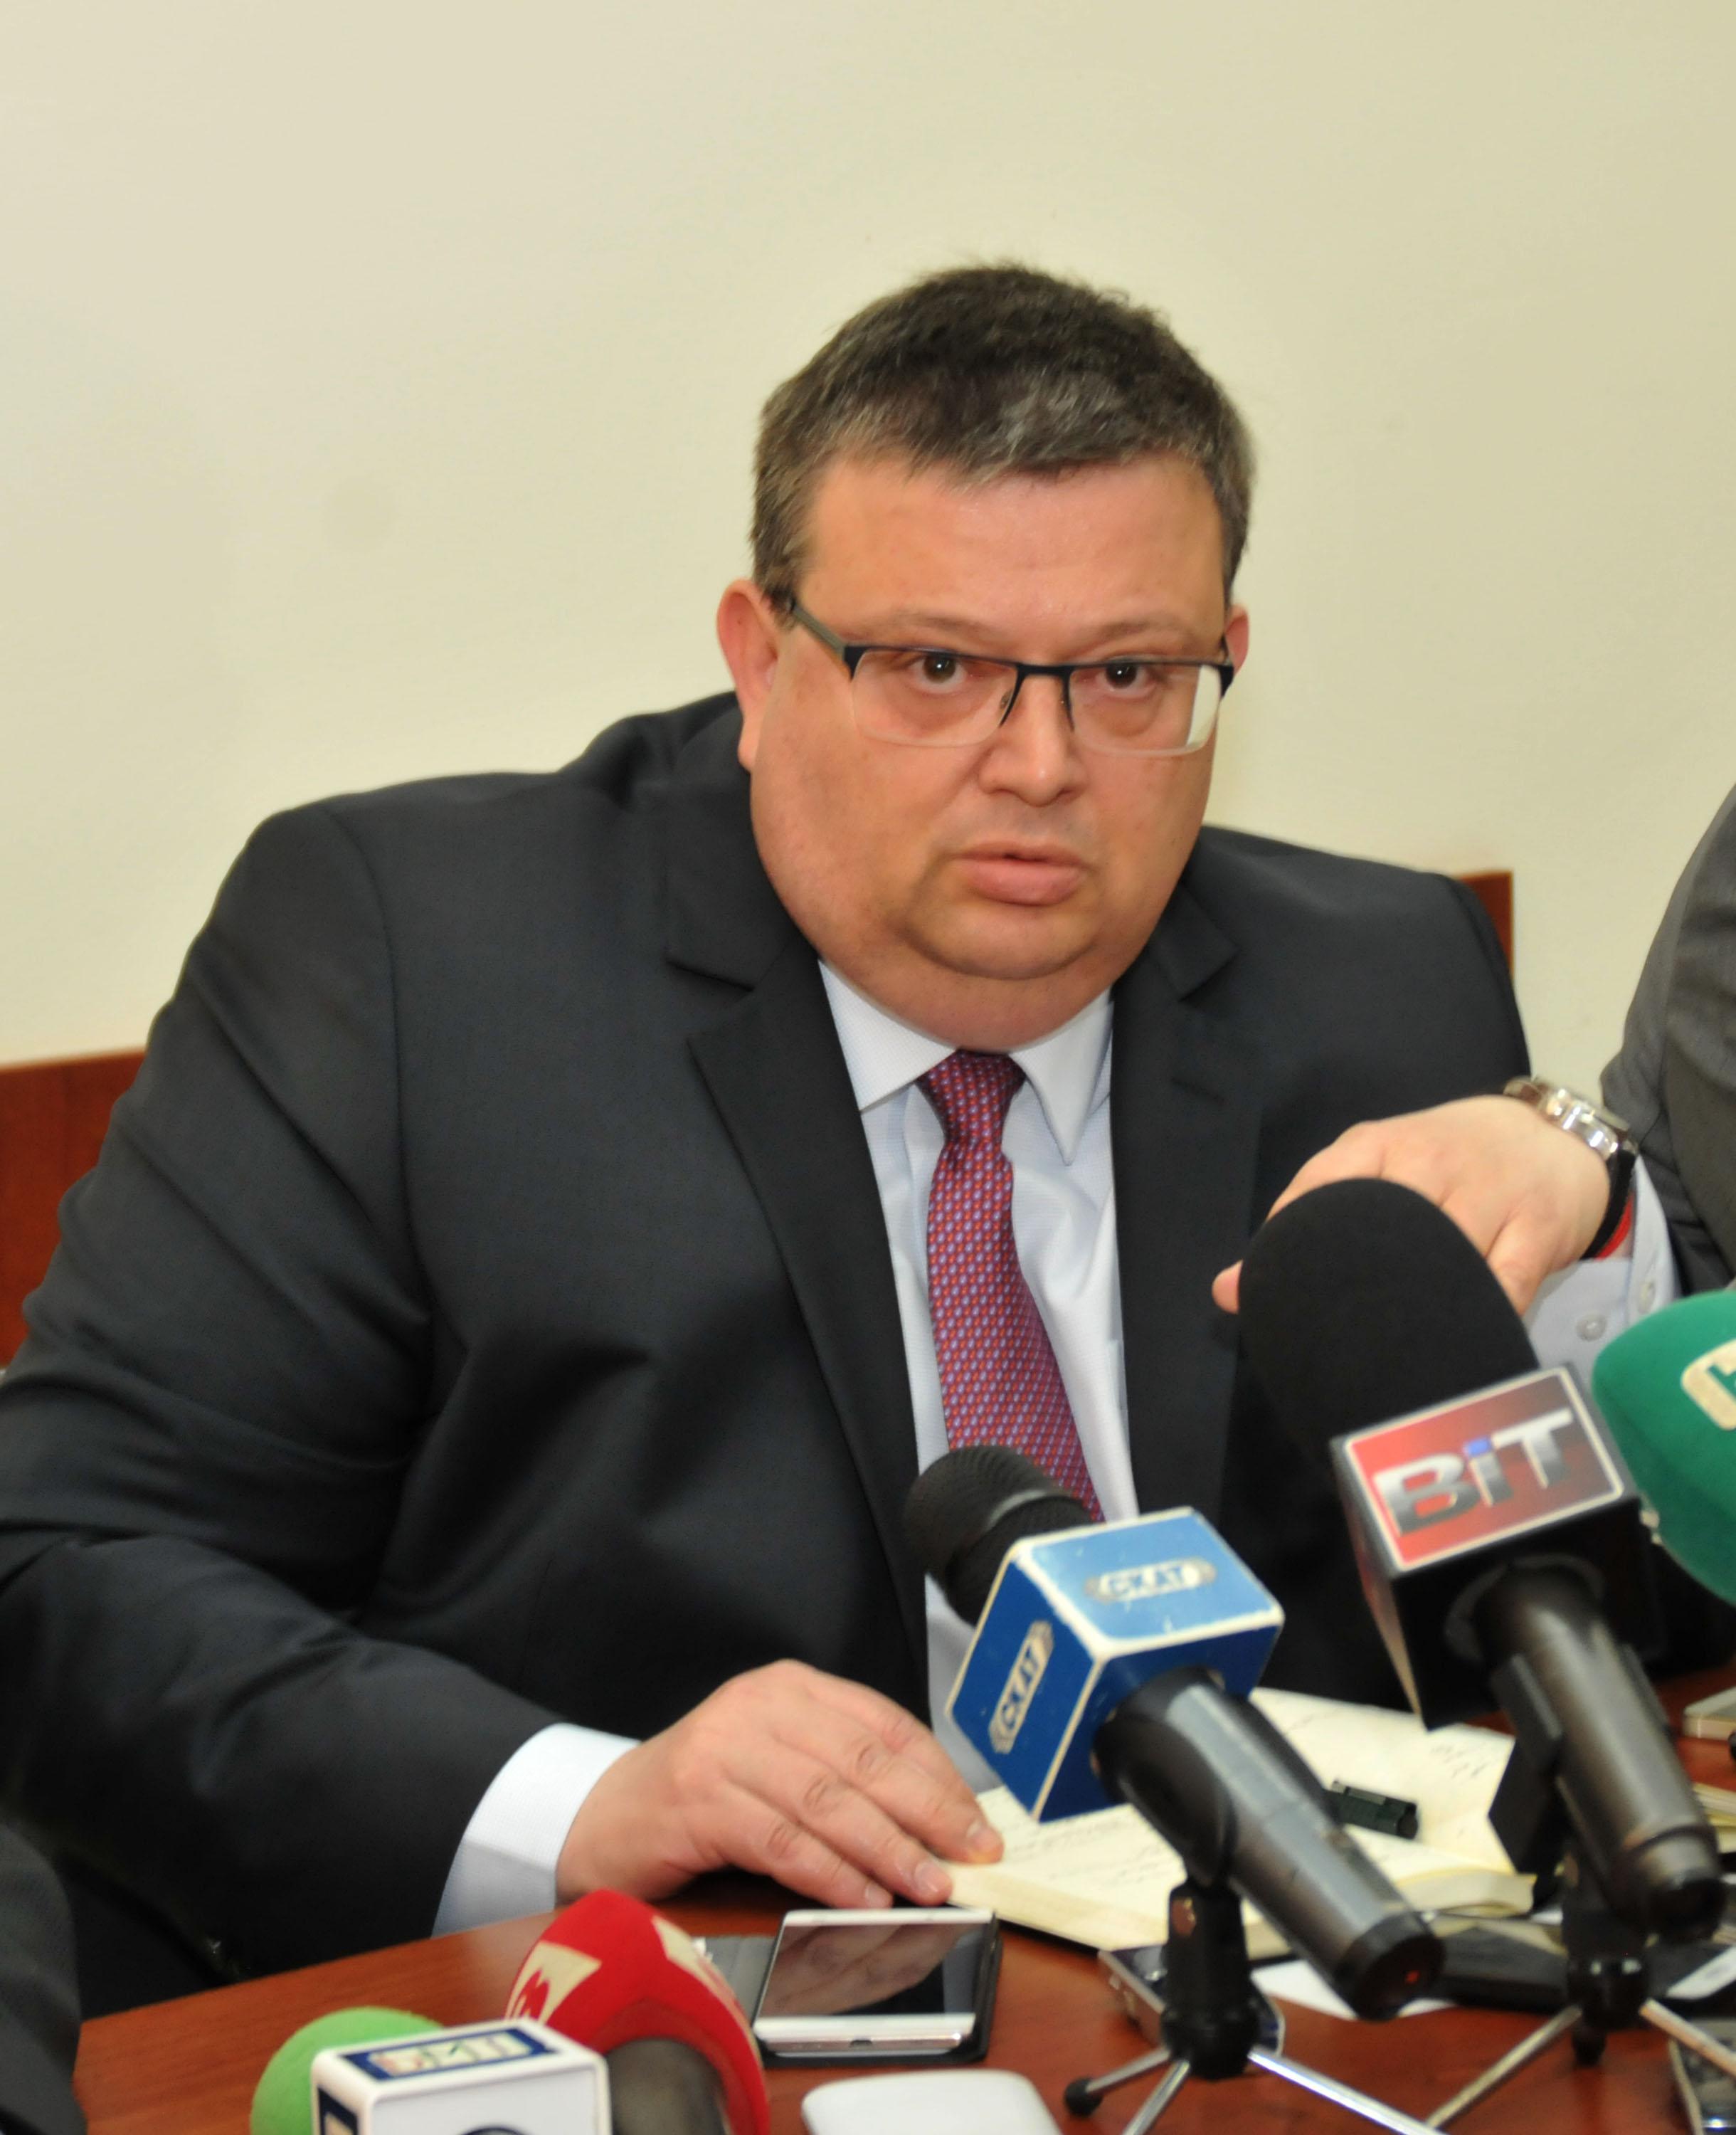 Сотир Цацаров беше категоричен, че изборите в България трябва да бъдат решени от българските граждани,